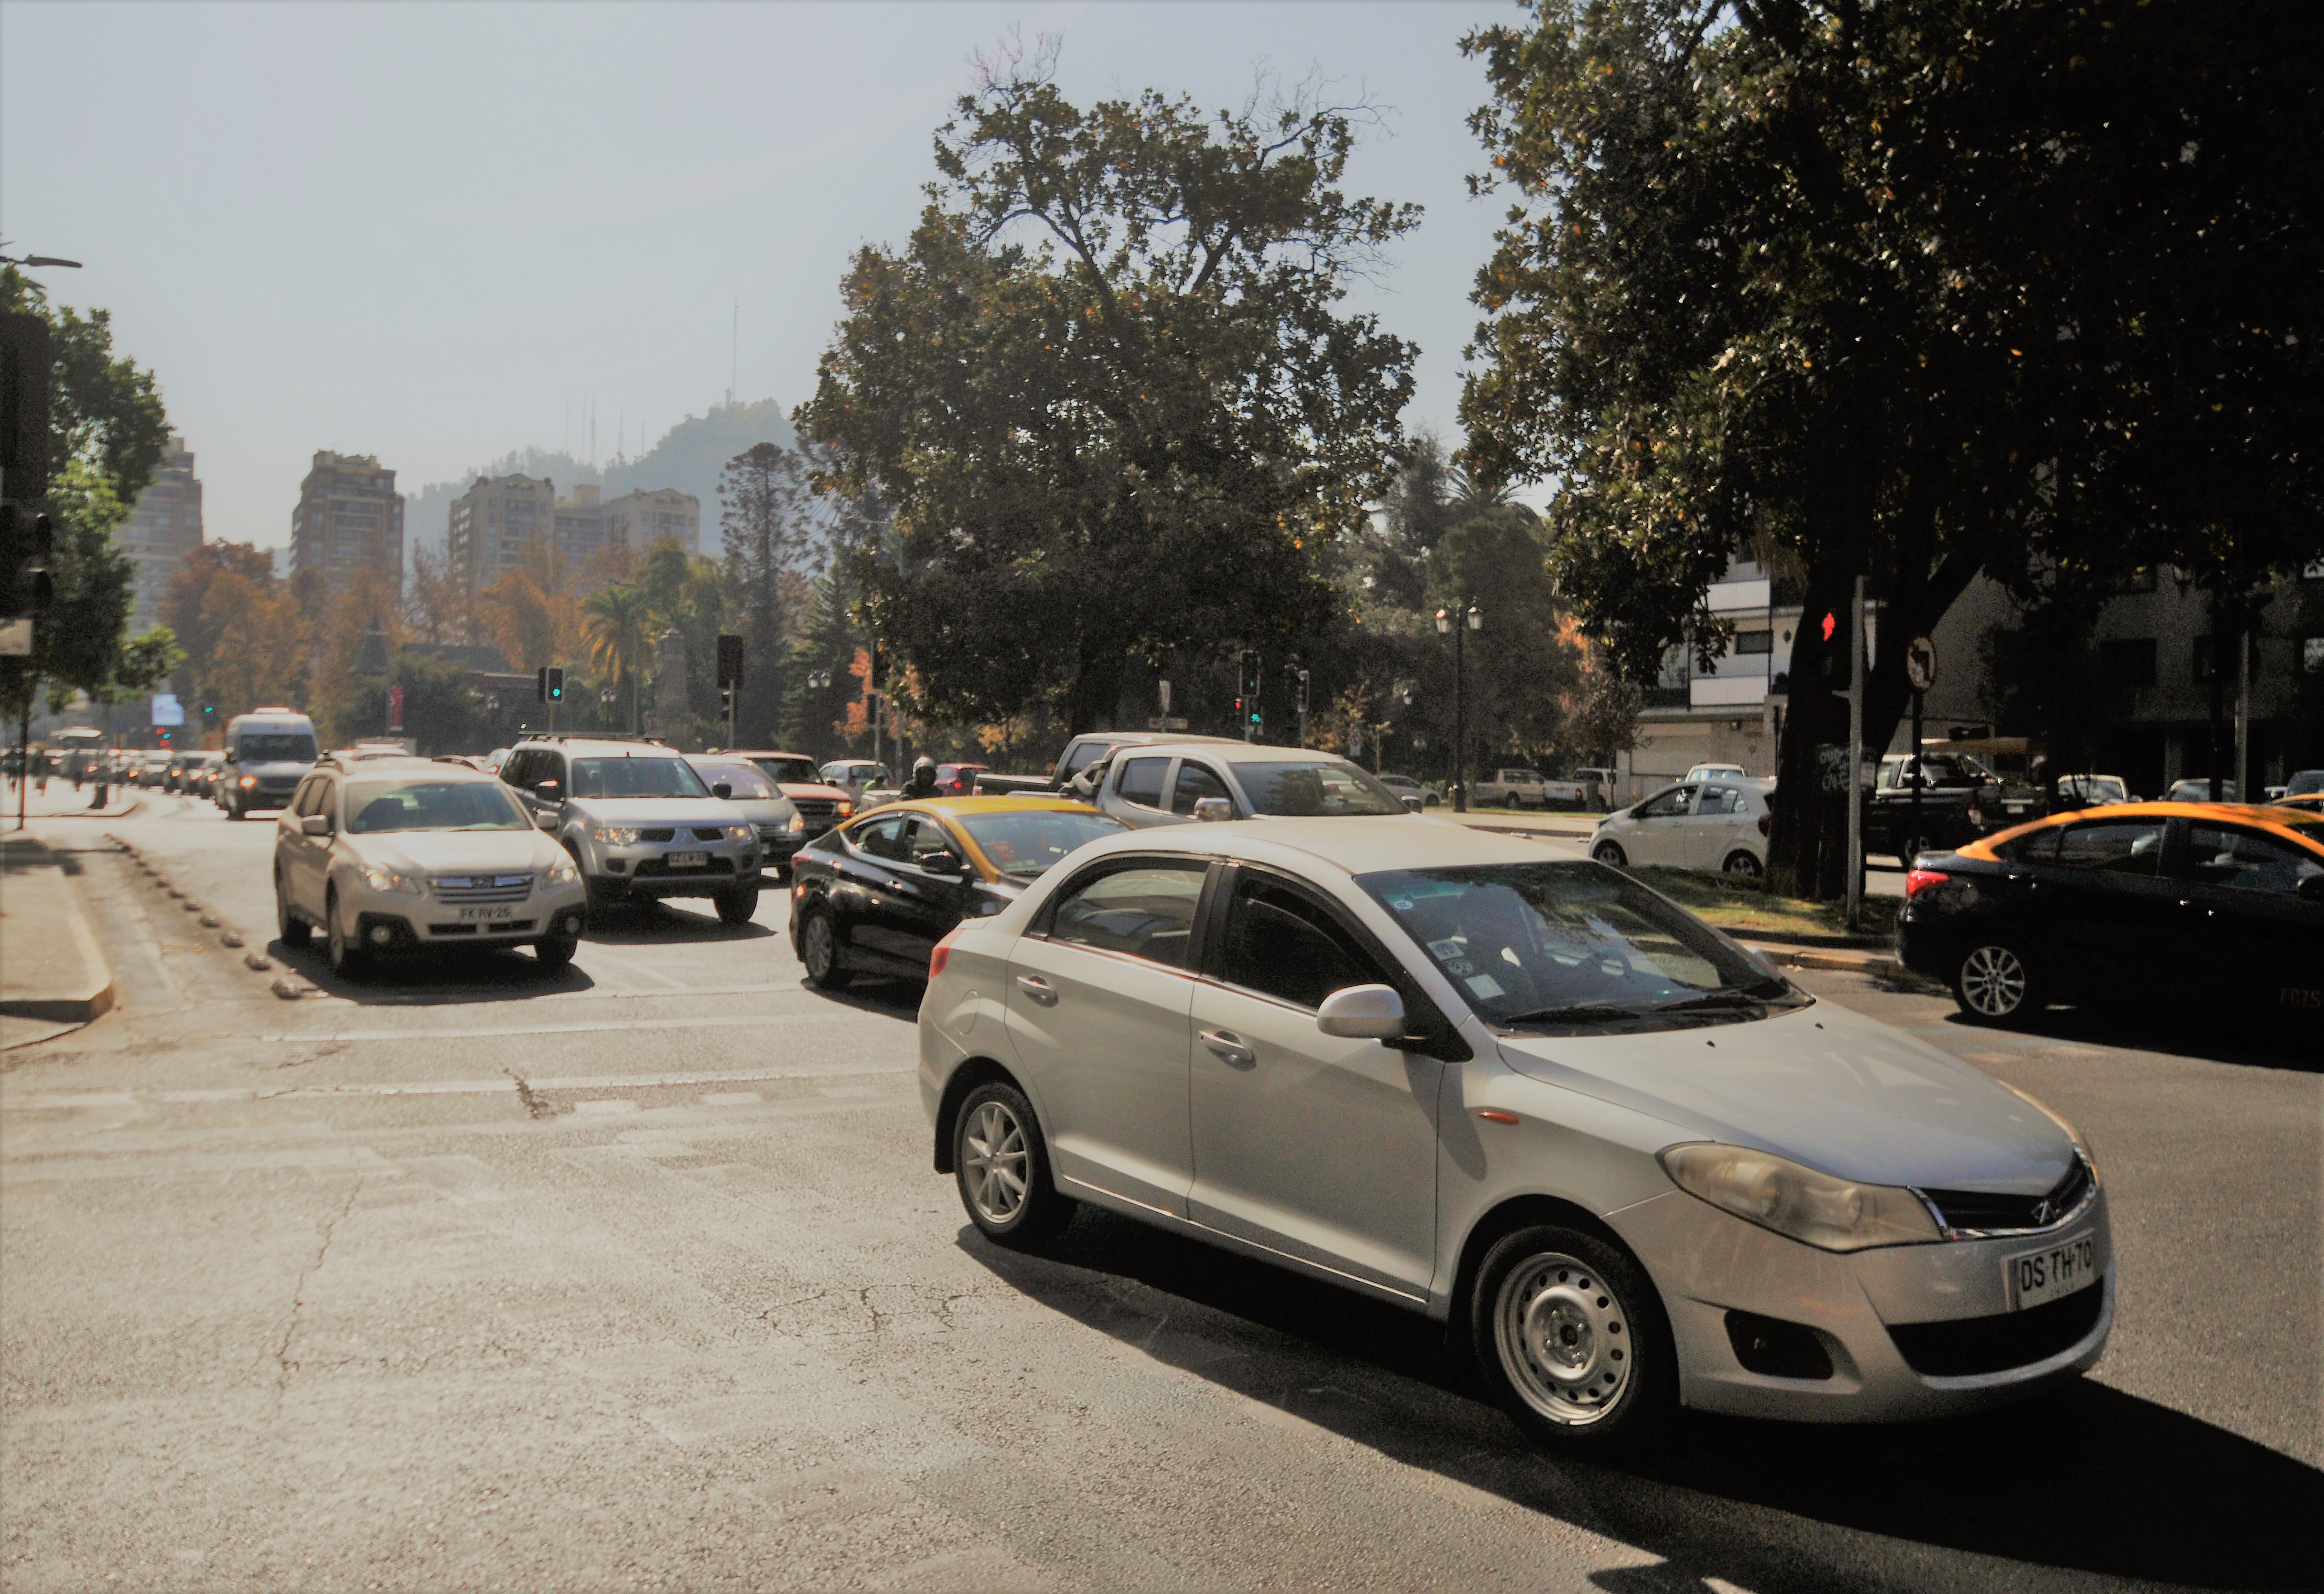 Parlamento aprueba reducción a 50 k/h para vehículos en zonas urbanas